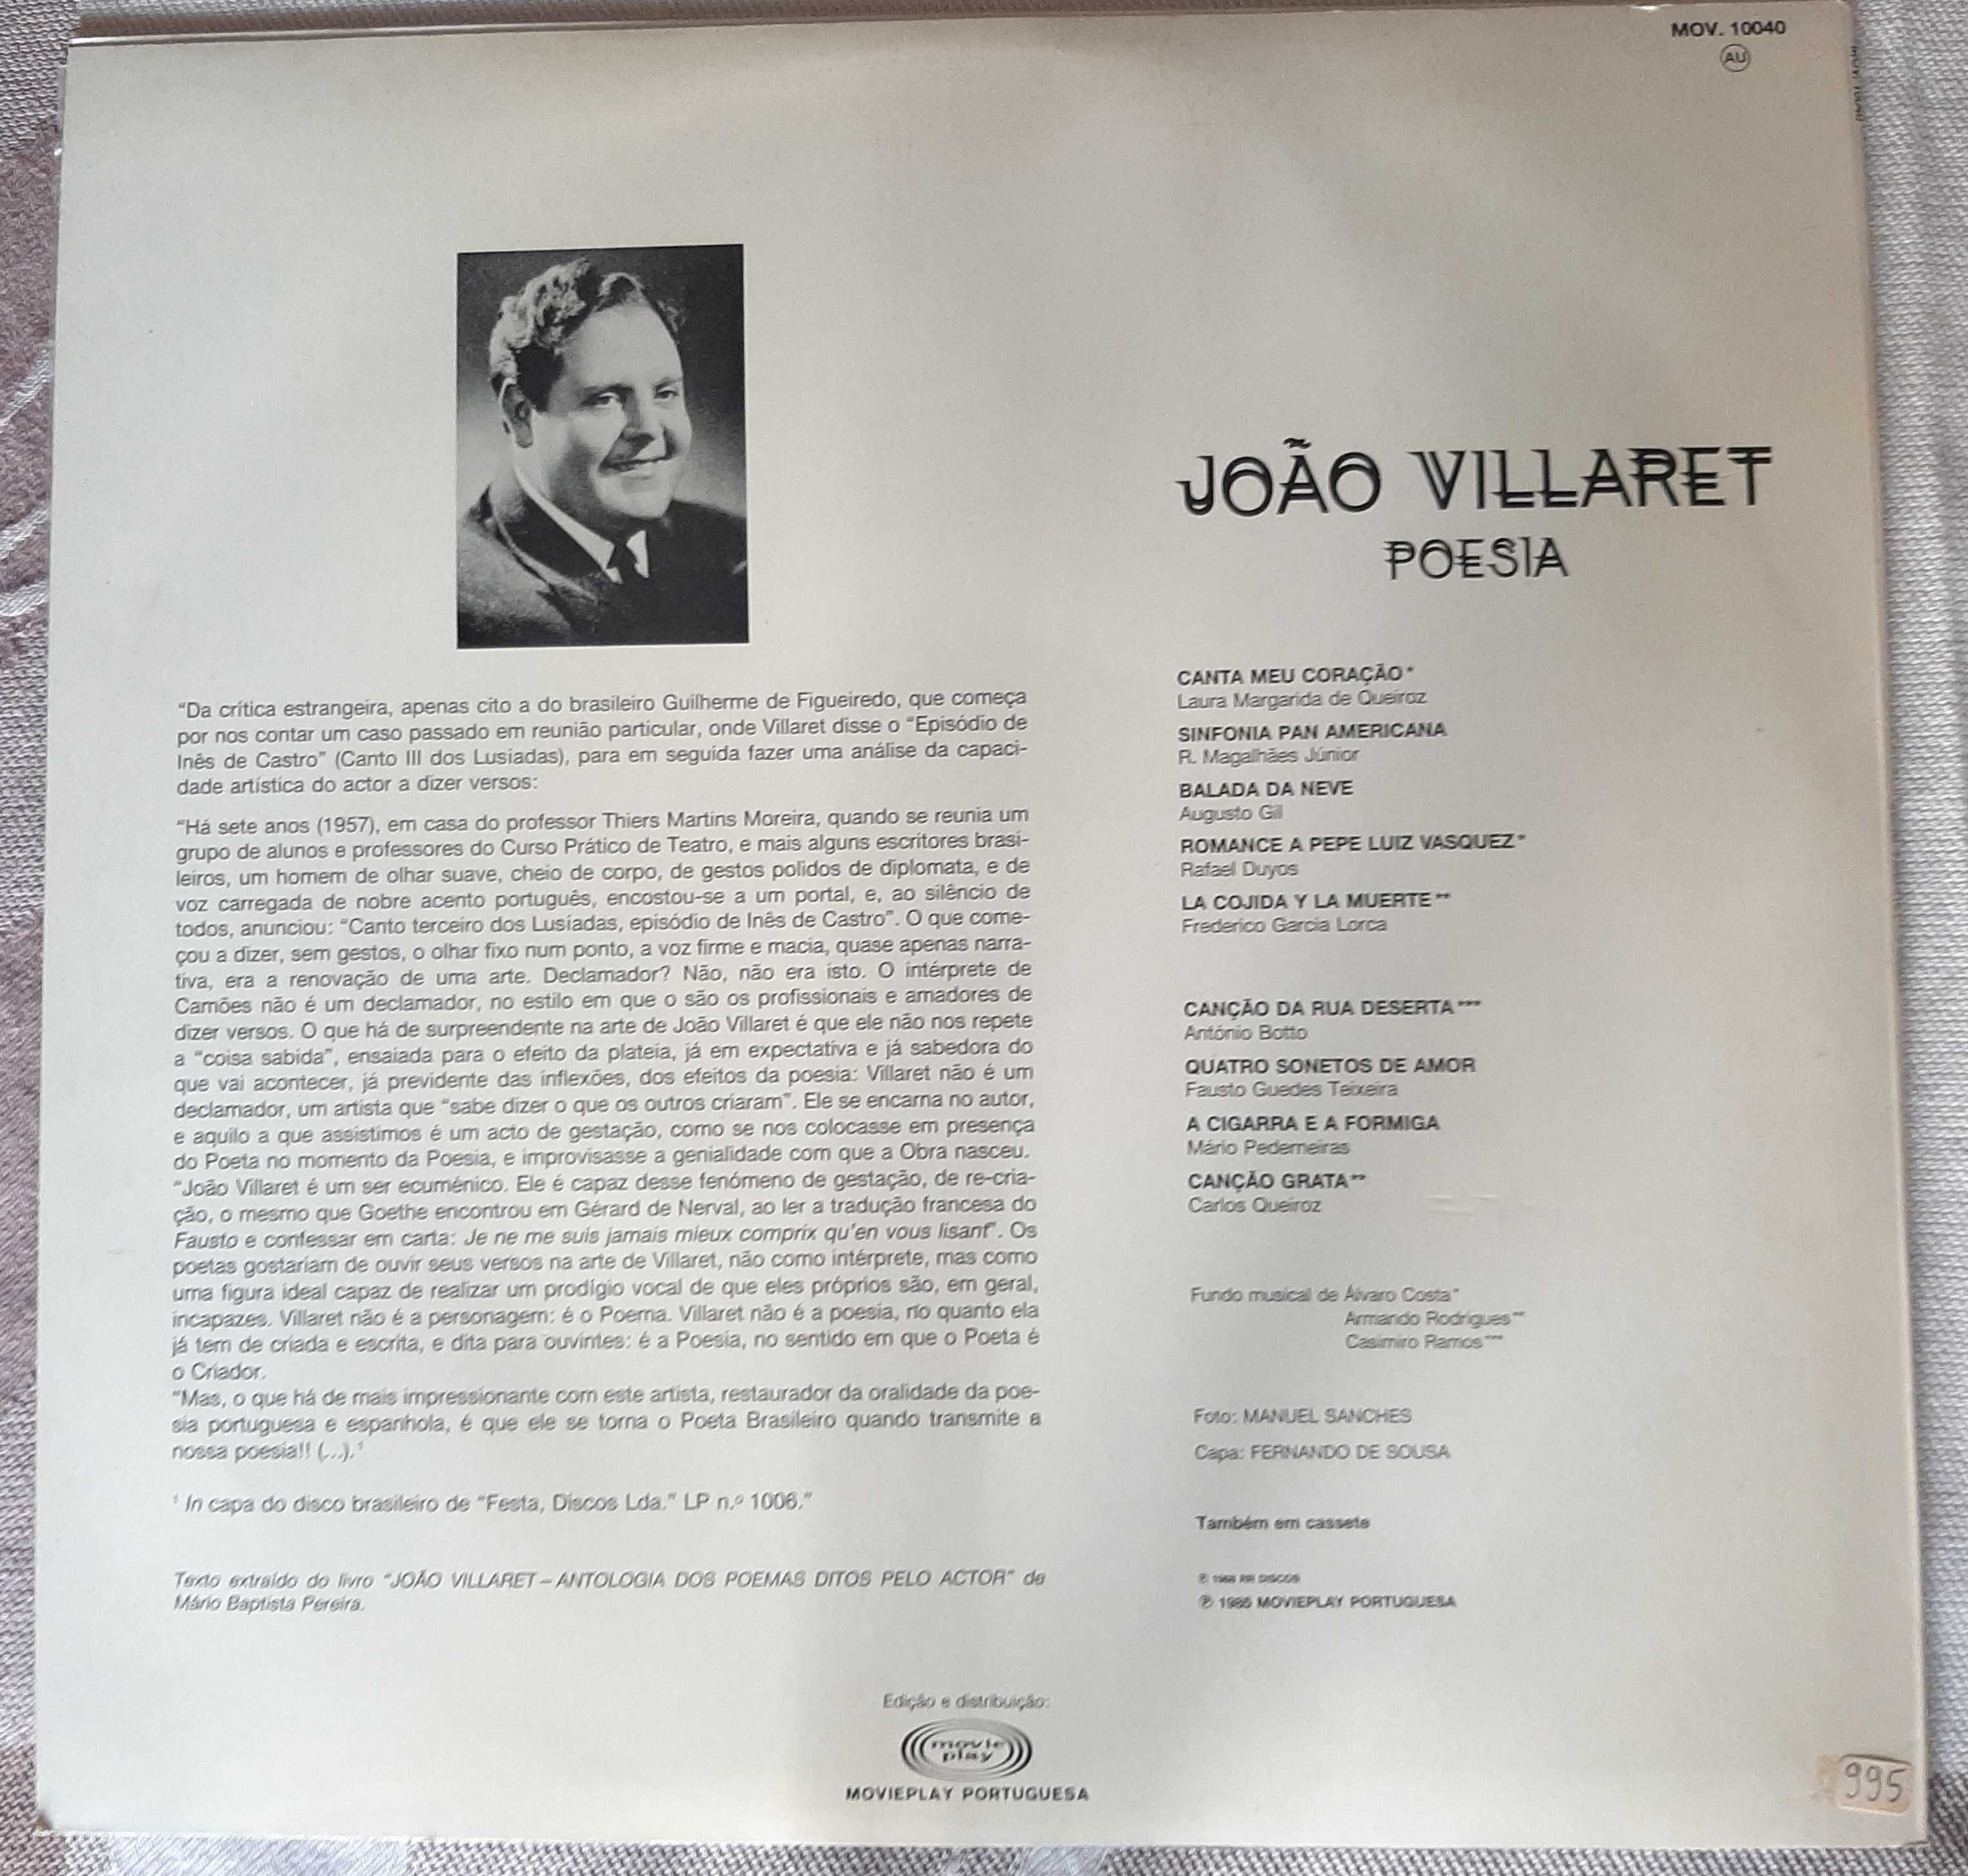 João Villaret "Poesia" raro disco vinil 1985